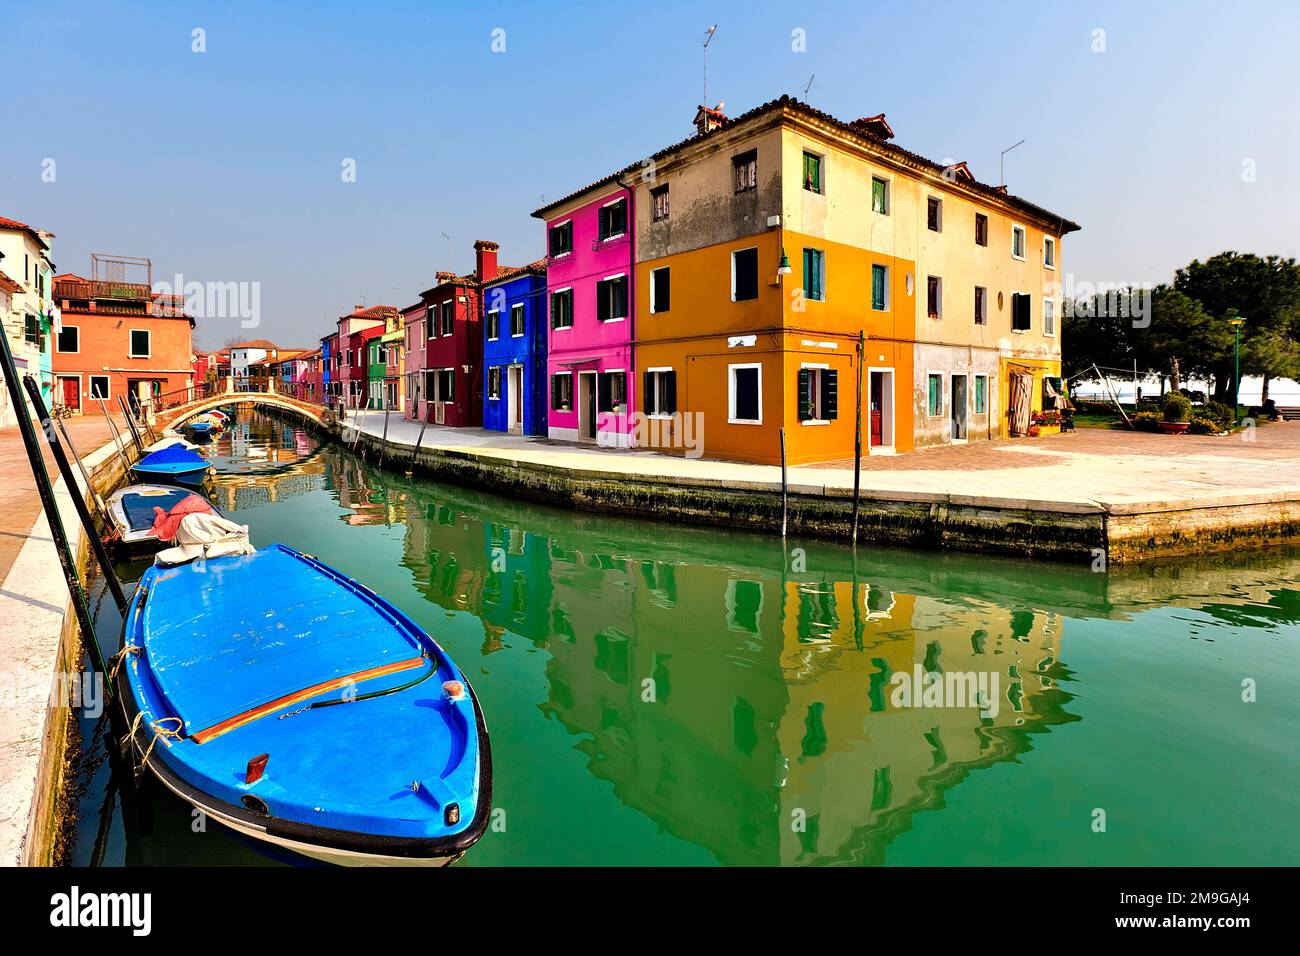 Maisons de ville aux couleurs vives sur la rive du canal, île de Burano, Venise, Italie Banque D'Images